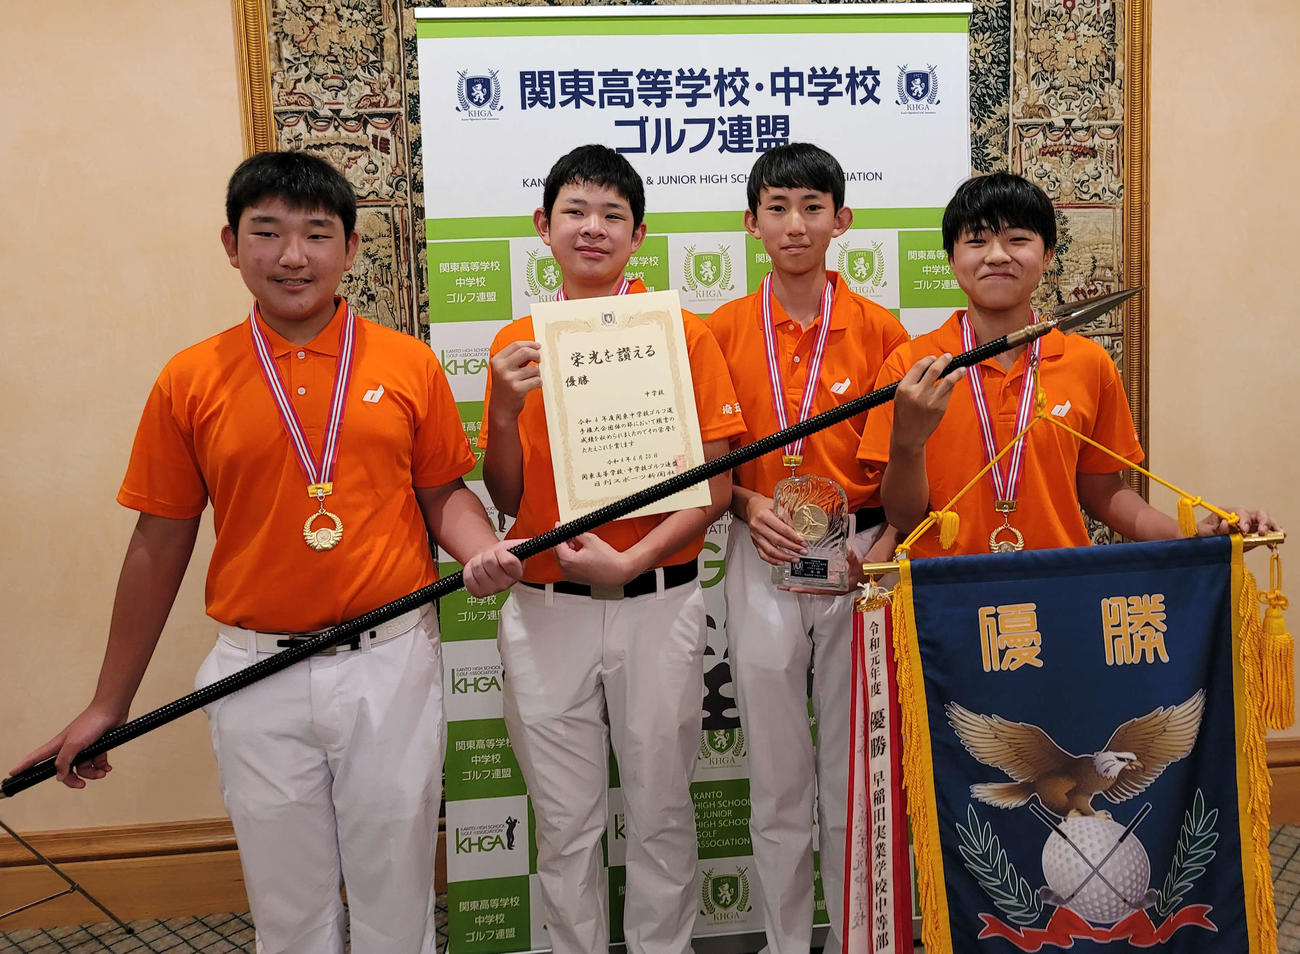 関東大会中学団体男子優勝の埼玉栄。左から
高島琉、清水悠雅、張真・星野健助